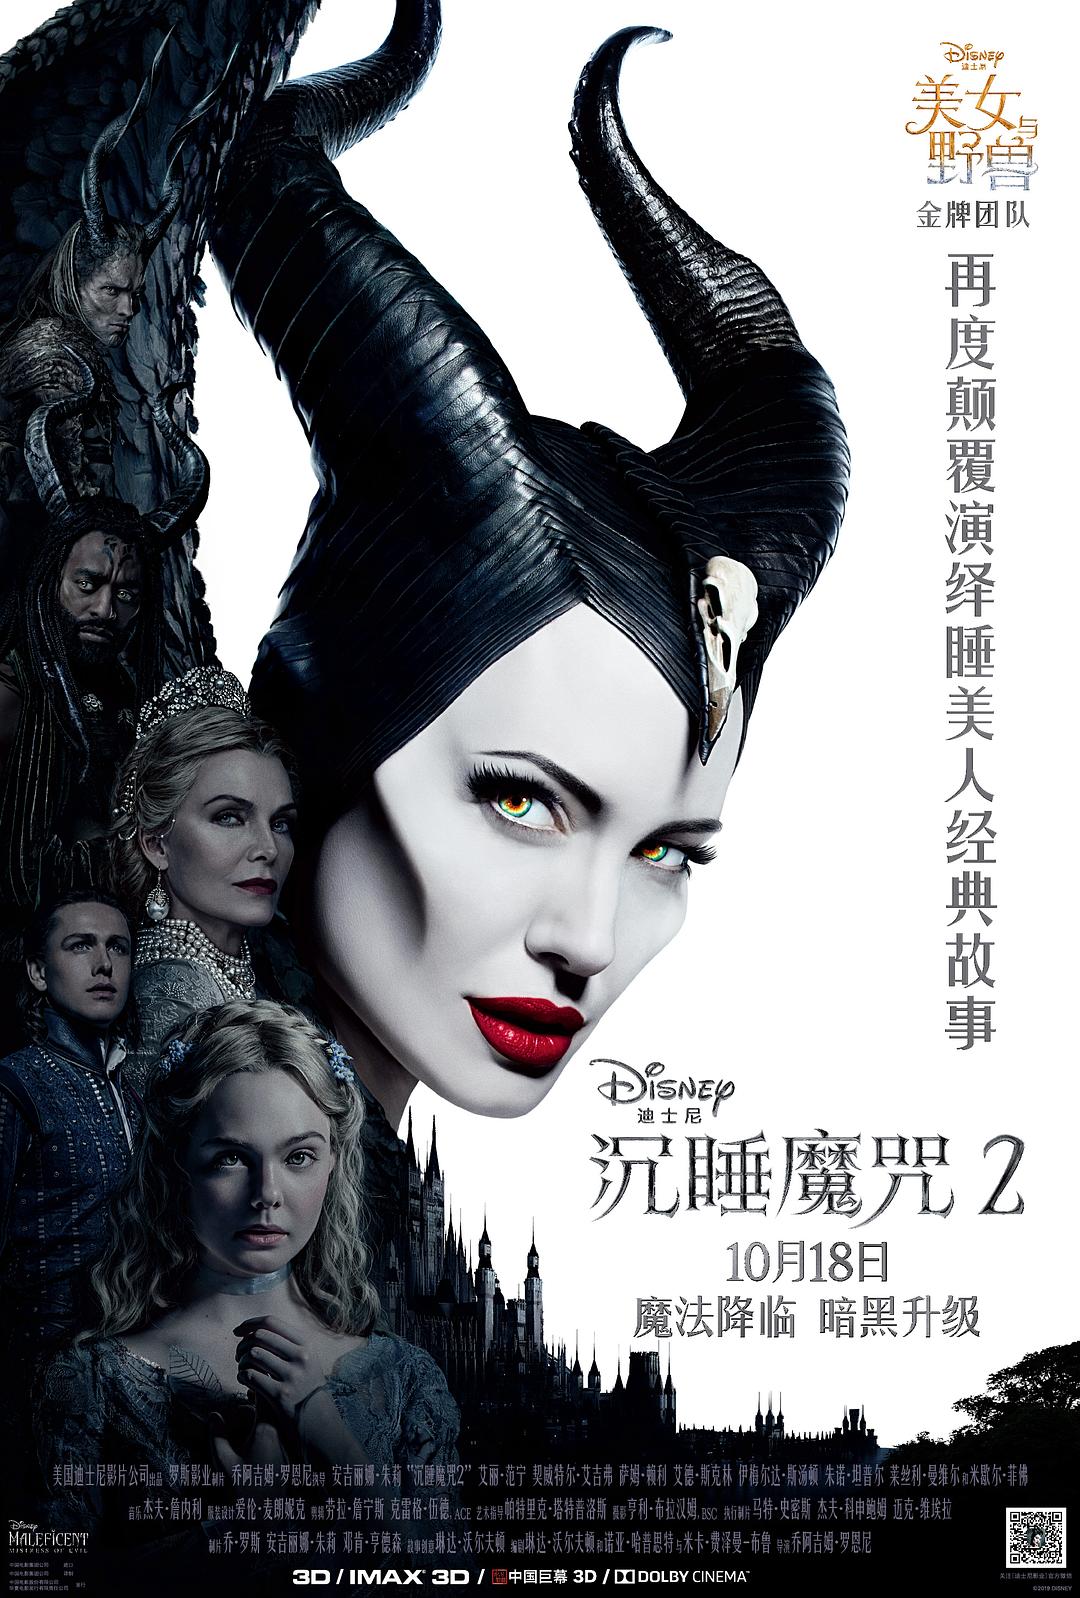 沉睡魔咒2 Maleficent.Mistress.of.Evil.2019.1080p.3D.BluRay.Half-SBS.x264.DTS-HD.MA.7.1-FGT 18.80GB-1.png